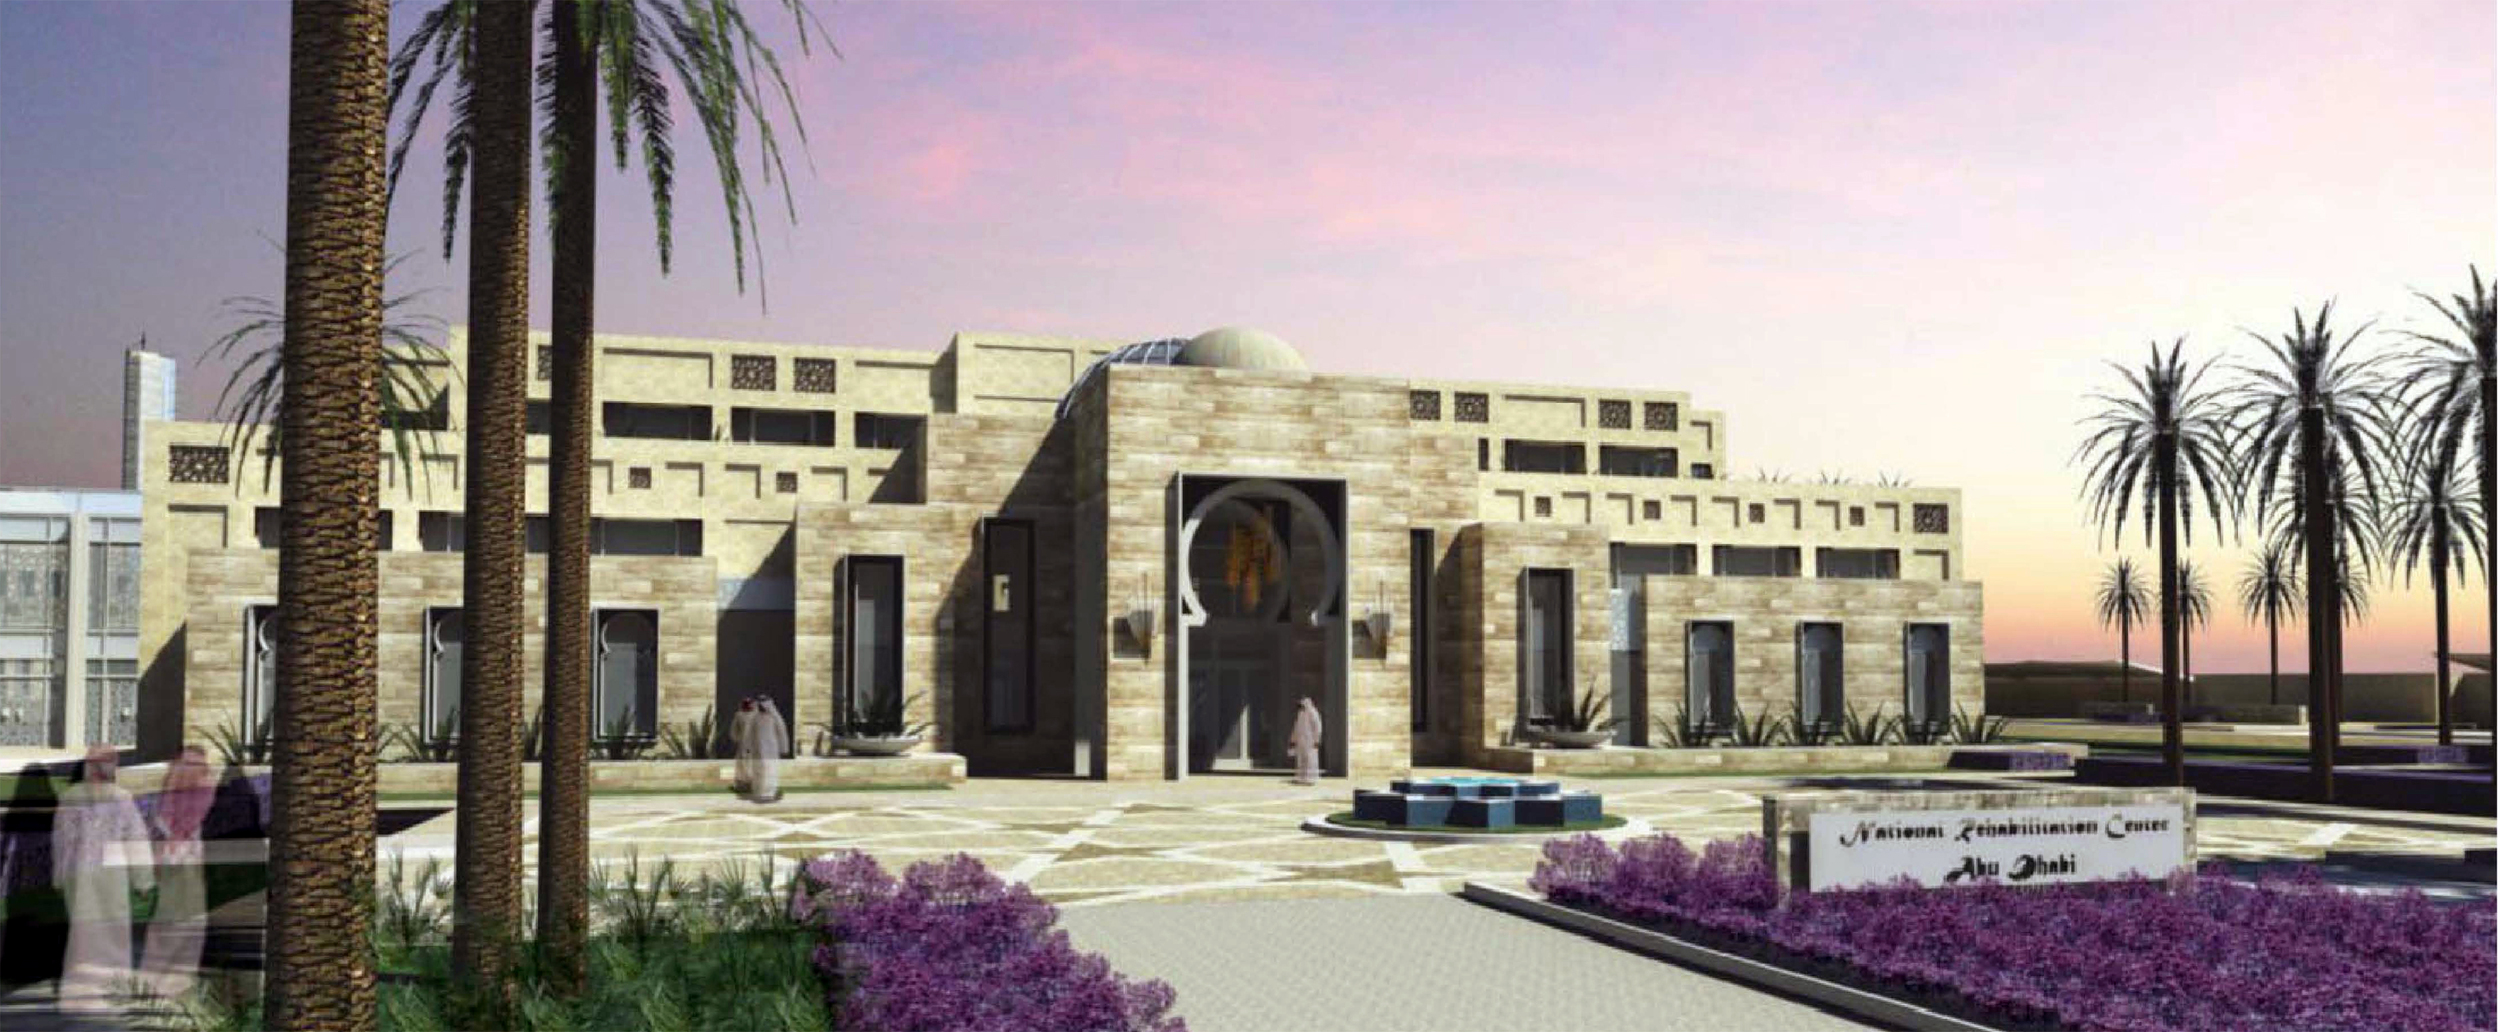 National Rehabilitation Center Abu Dhabi